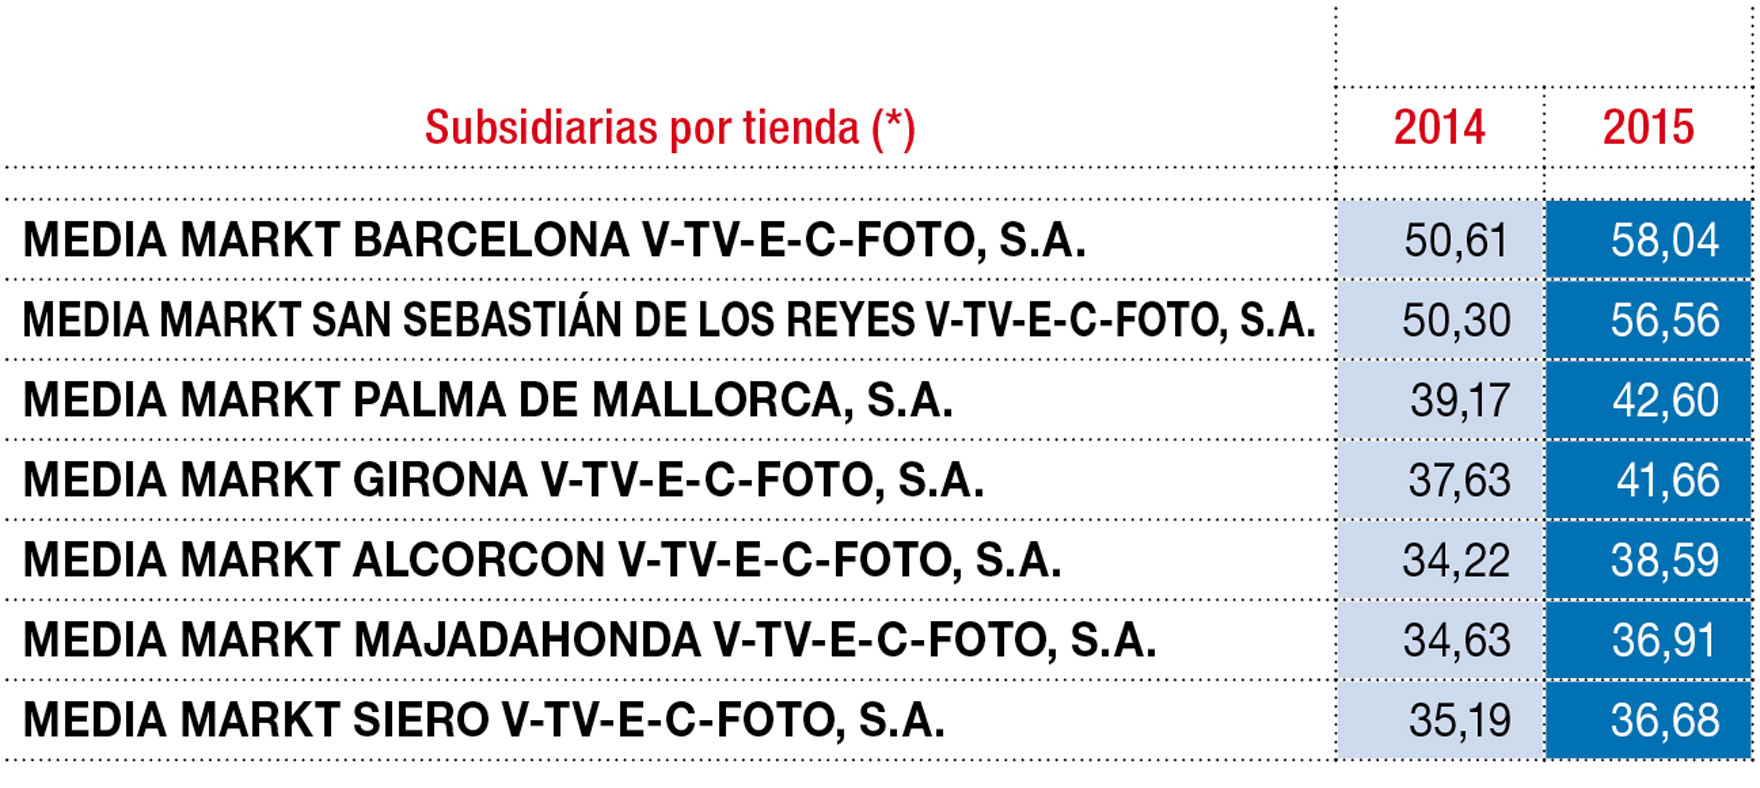 Radiografía de las principales tiendas de Media Markt en España (M€)